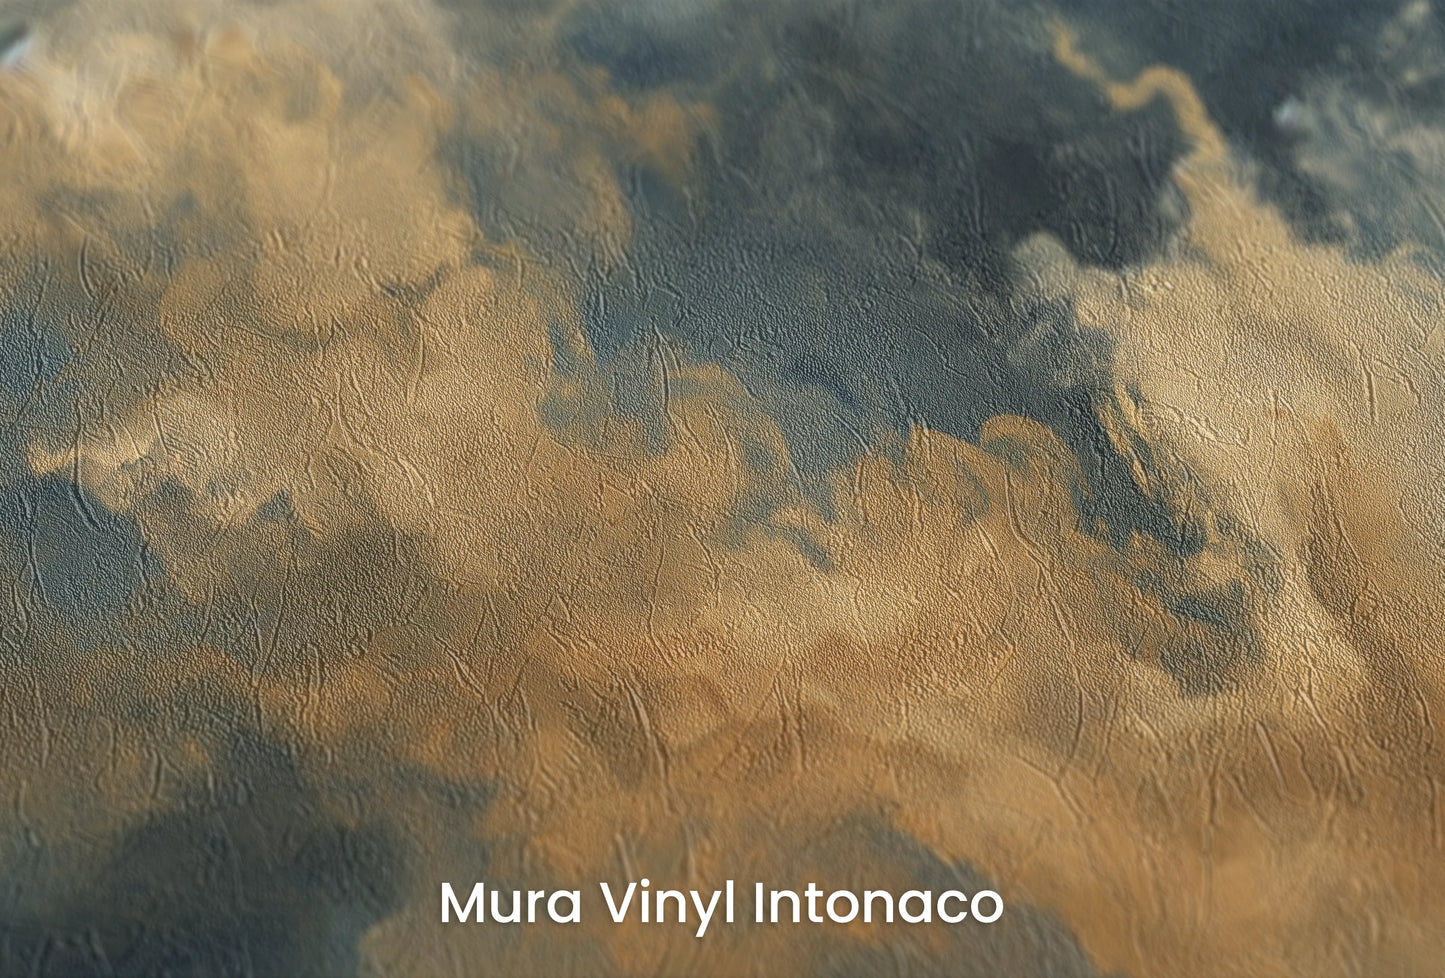 Zbliżenie na artystyczną fototapetę o nazwie Storm's Embrace na podłożu Mura Vinyl Intonaco - struktura tartego tynku.